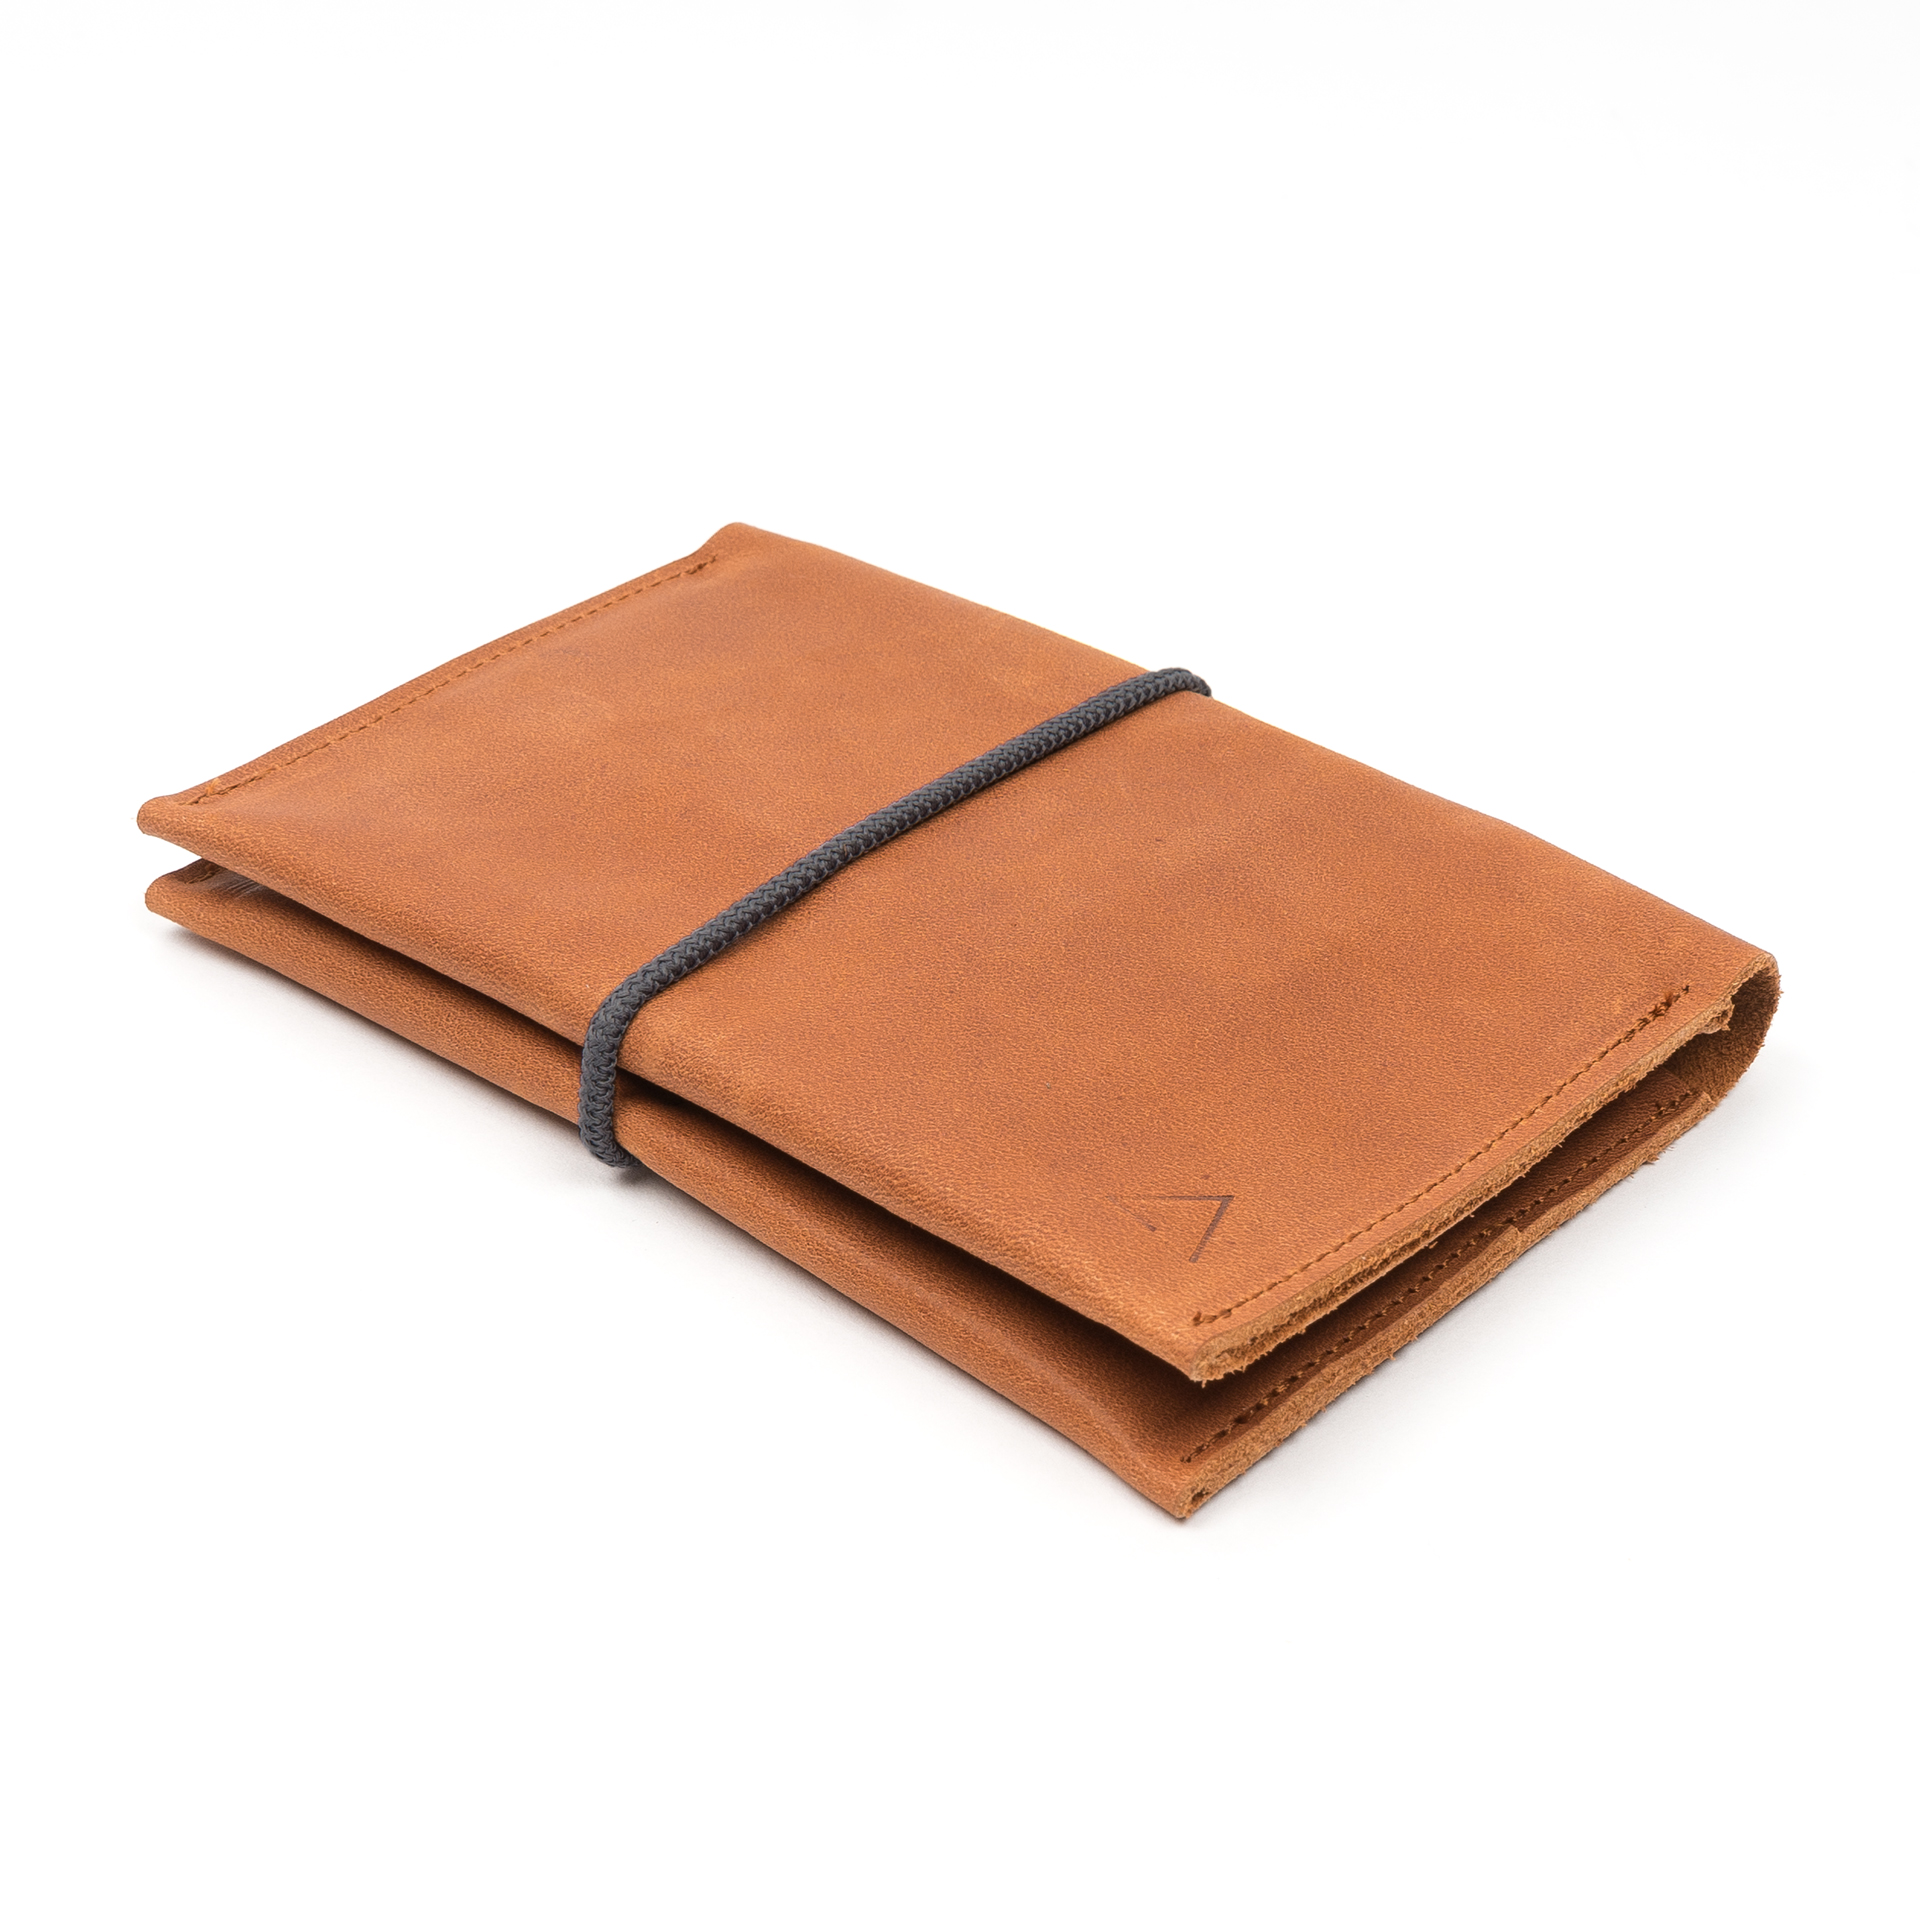 Brieftasche OLI LARGE aus nachhaltigem Naturleder in Cognac geölt mit grauem Verschlussband